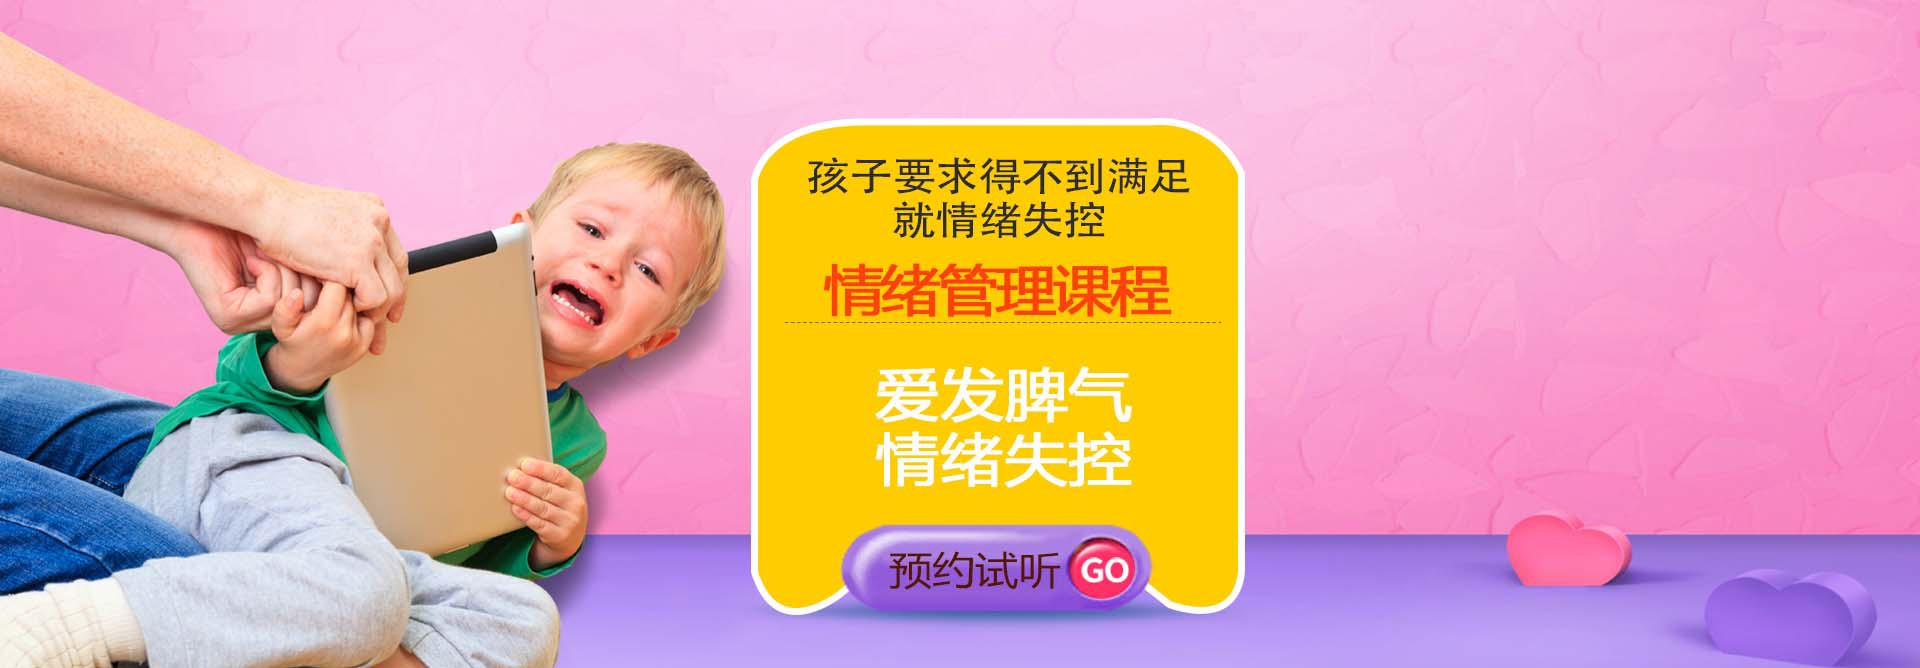 广州儿童情绪管理课程